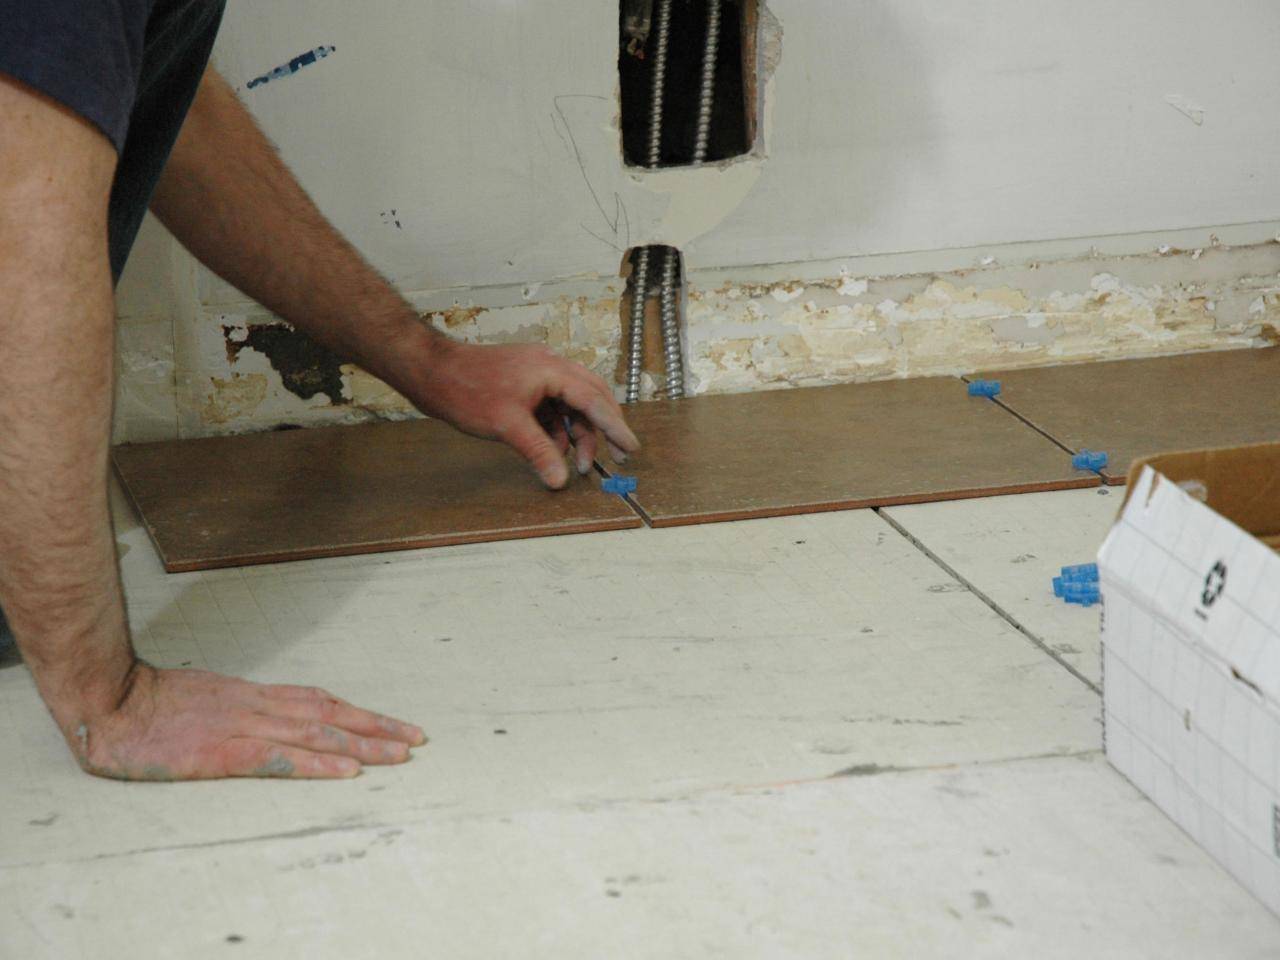 Технологии укладки керамической плитки на деревянный пол в ванной комнате